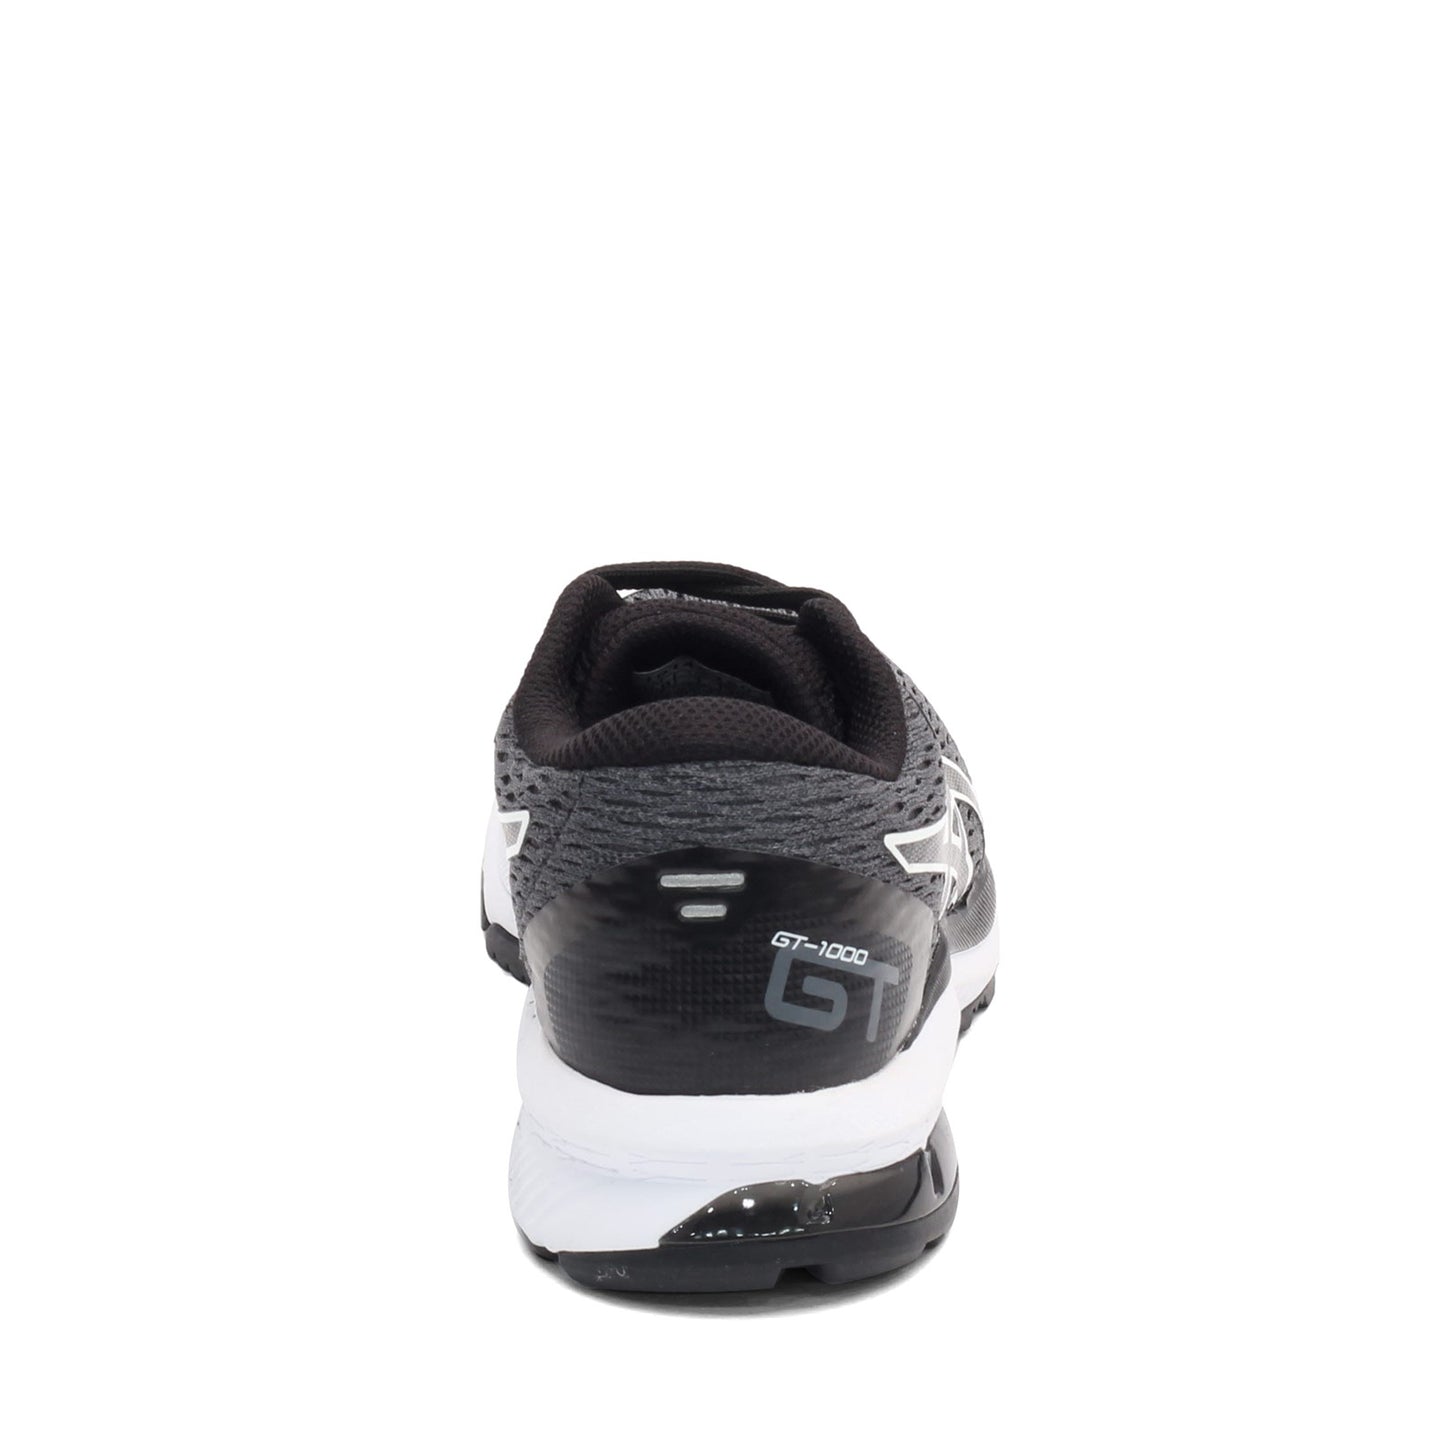 Peltz Shoes  Boy's ASICS GT-1000 9 Running Shoe - Little Kid & Big Kid GREY BLACK 1014A150.004